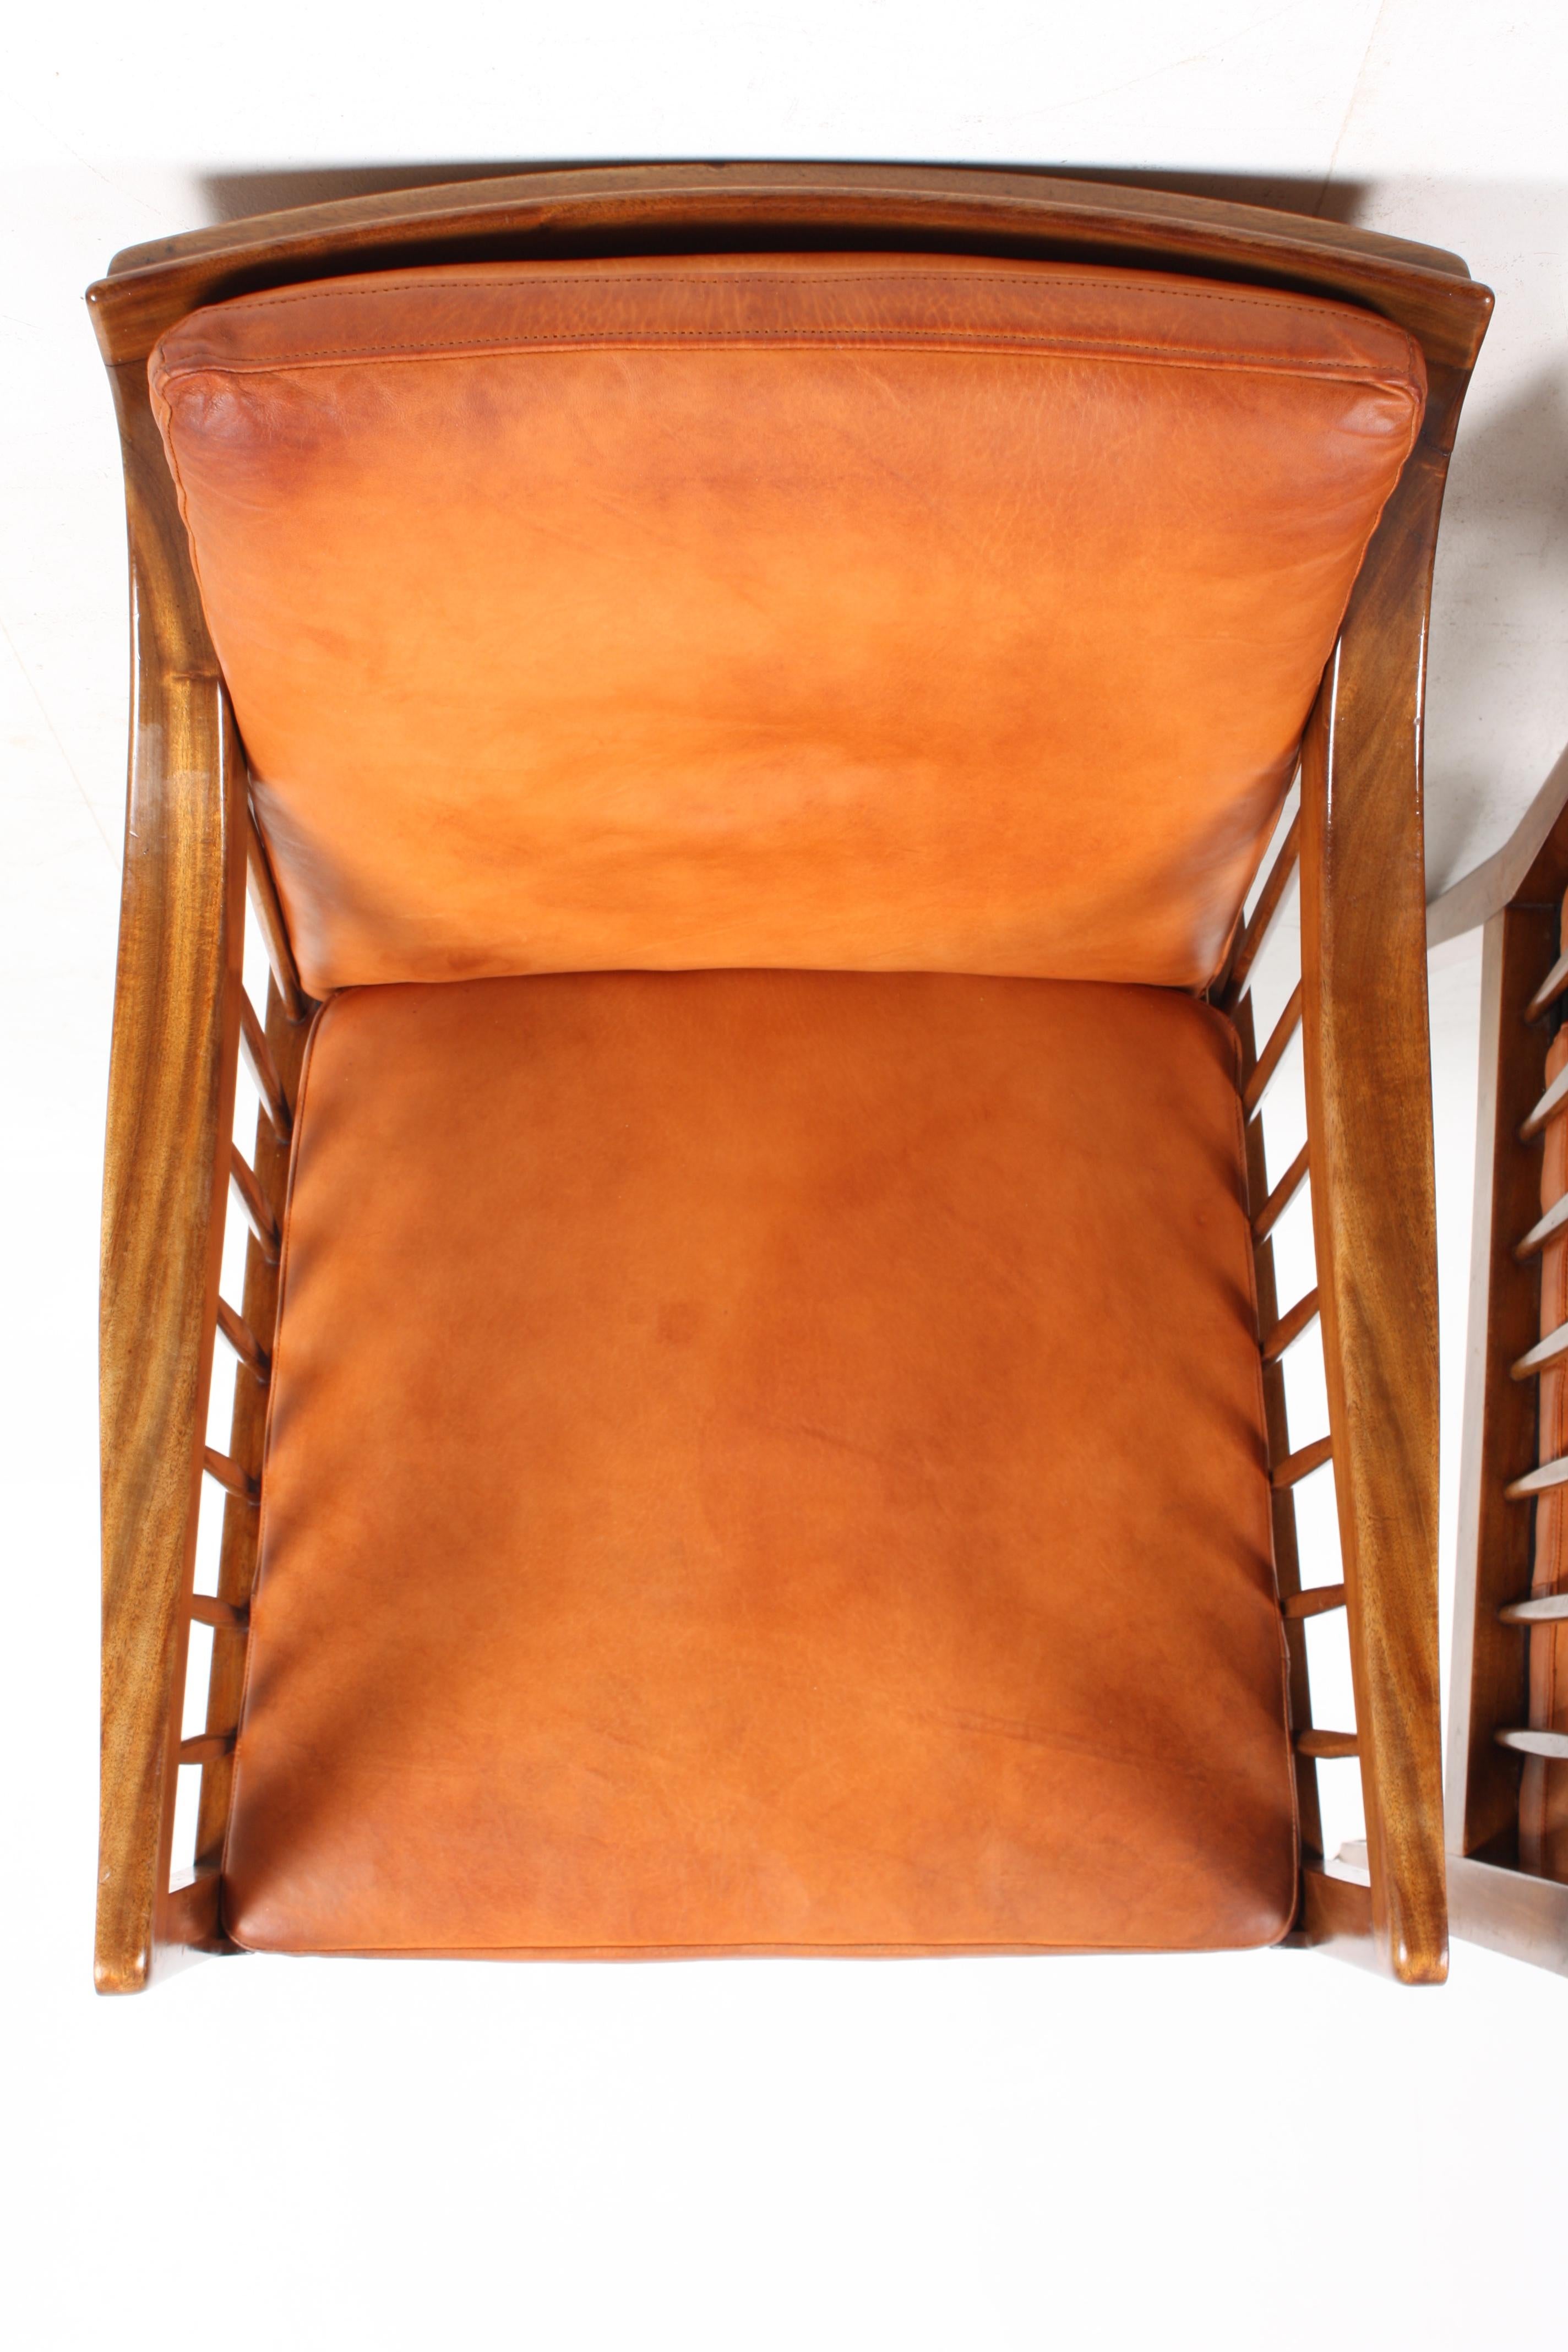 Pair of Classic Midcentury Danish Lounge Chairs, 1940s 5